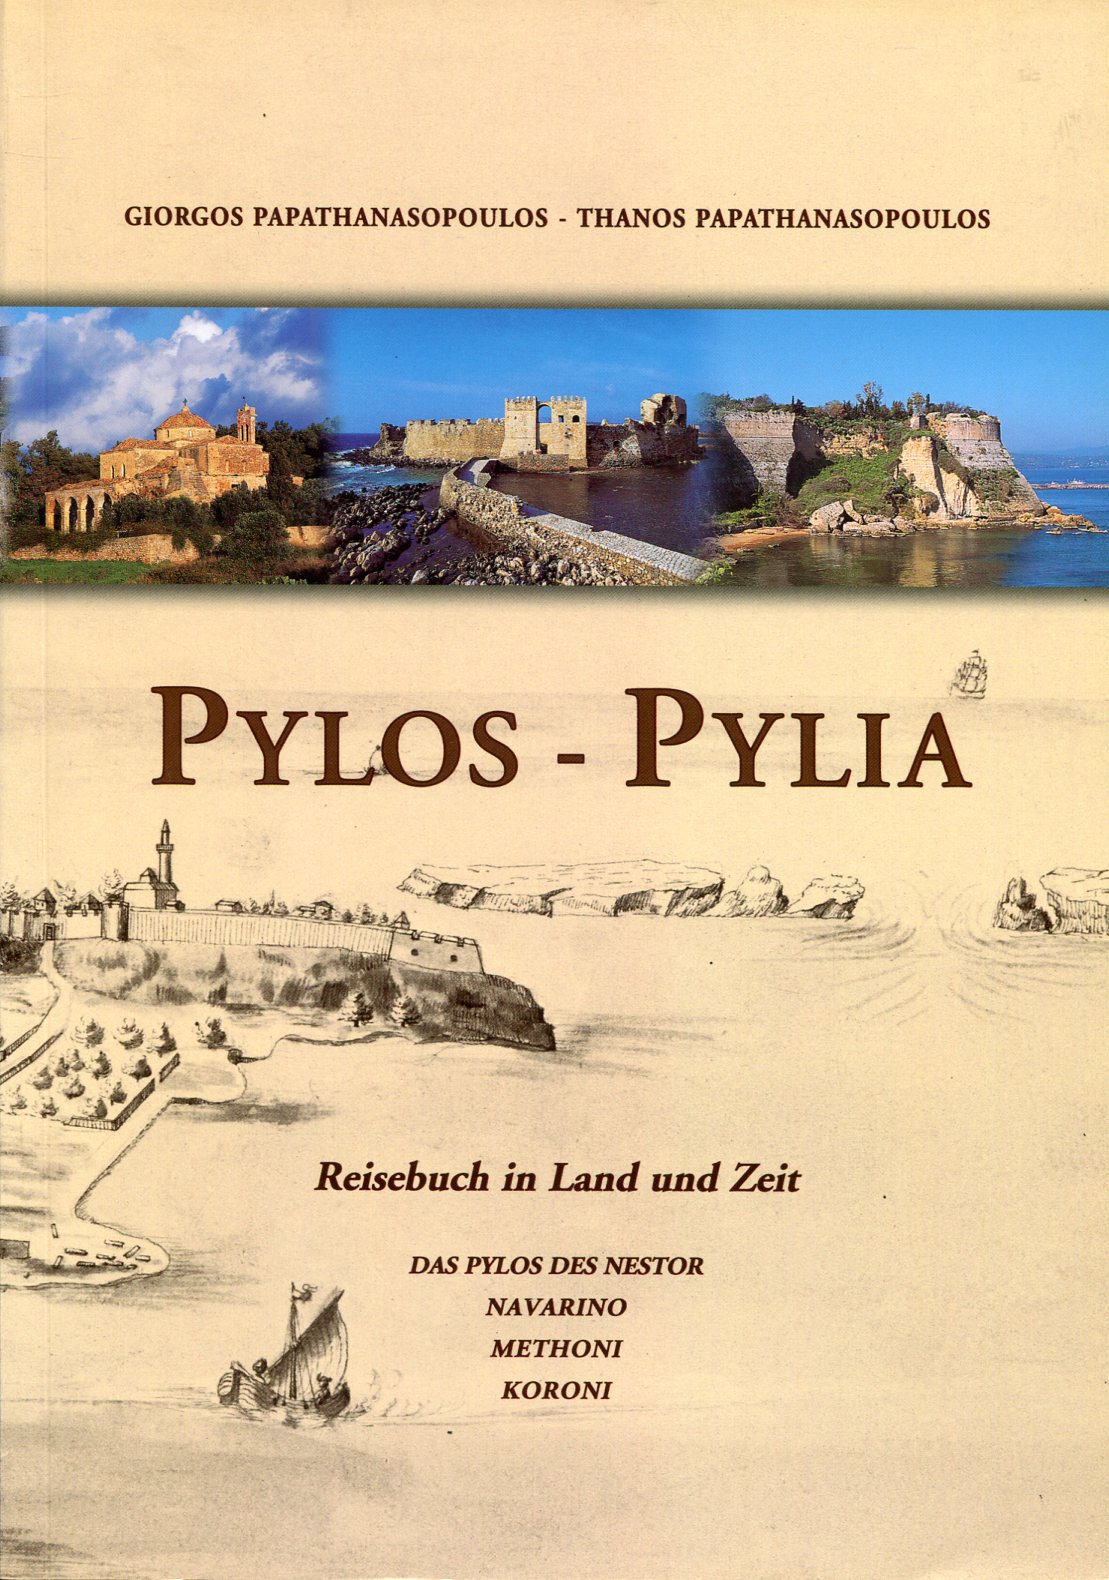 PYLOS - PYLIA